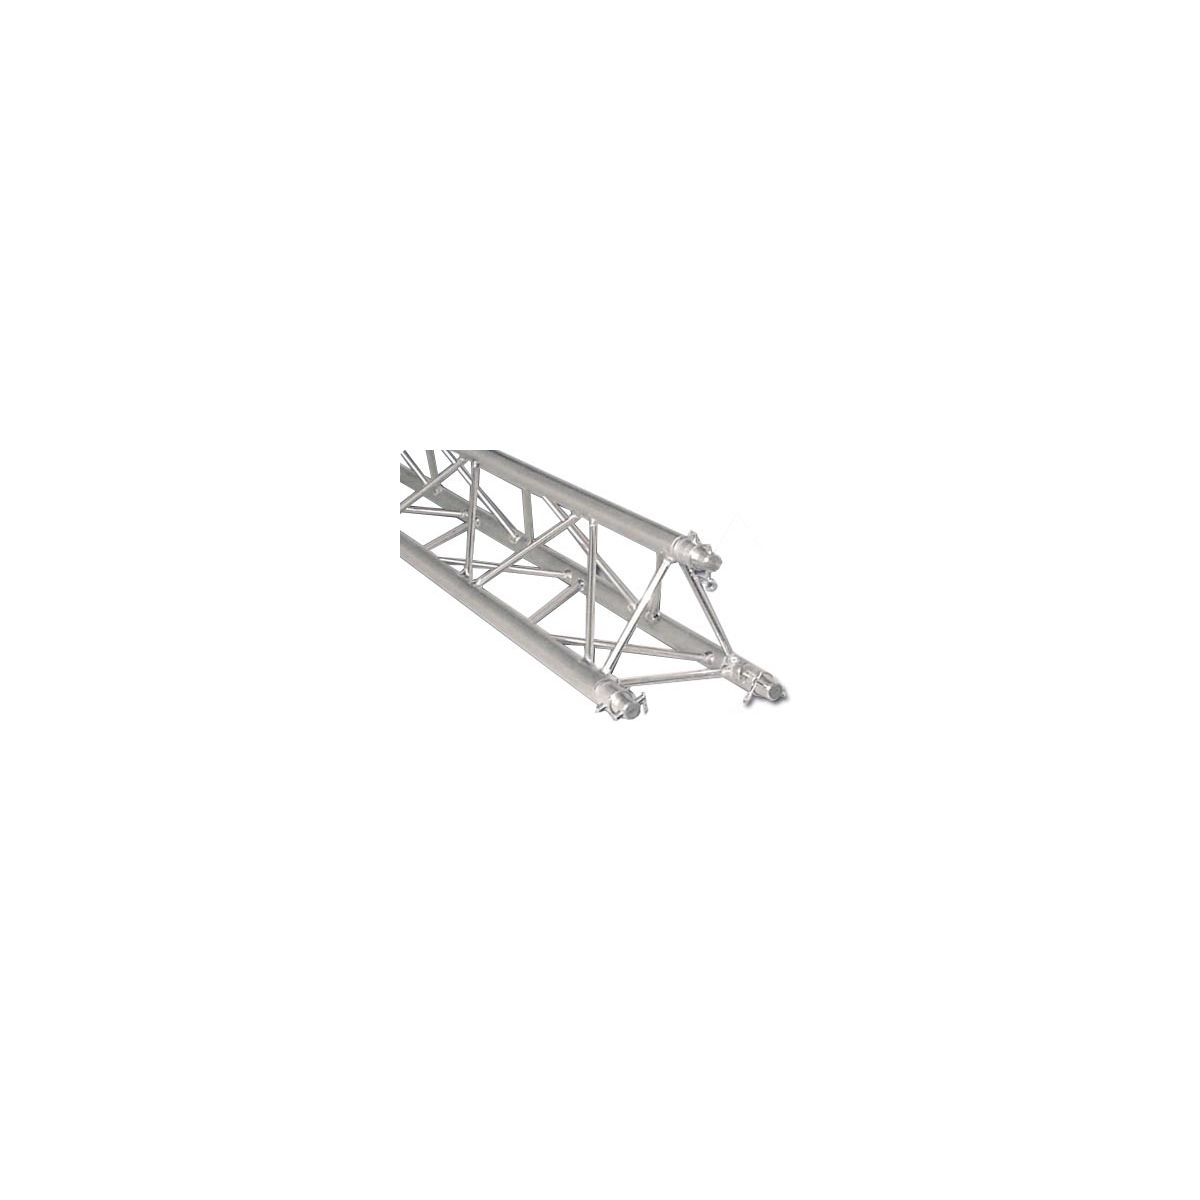 Structures aluminium - Mobiltruss - TRIO DECO 30120